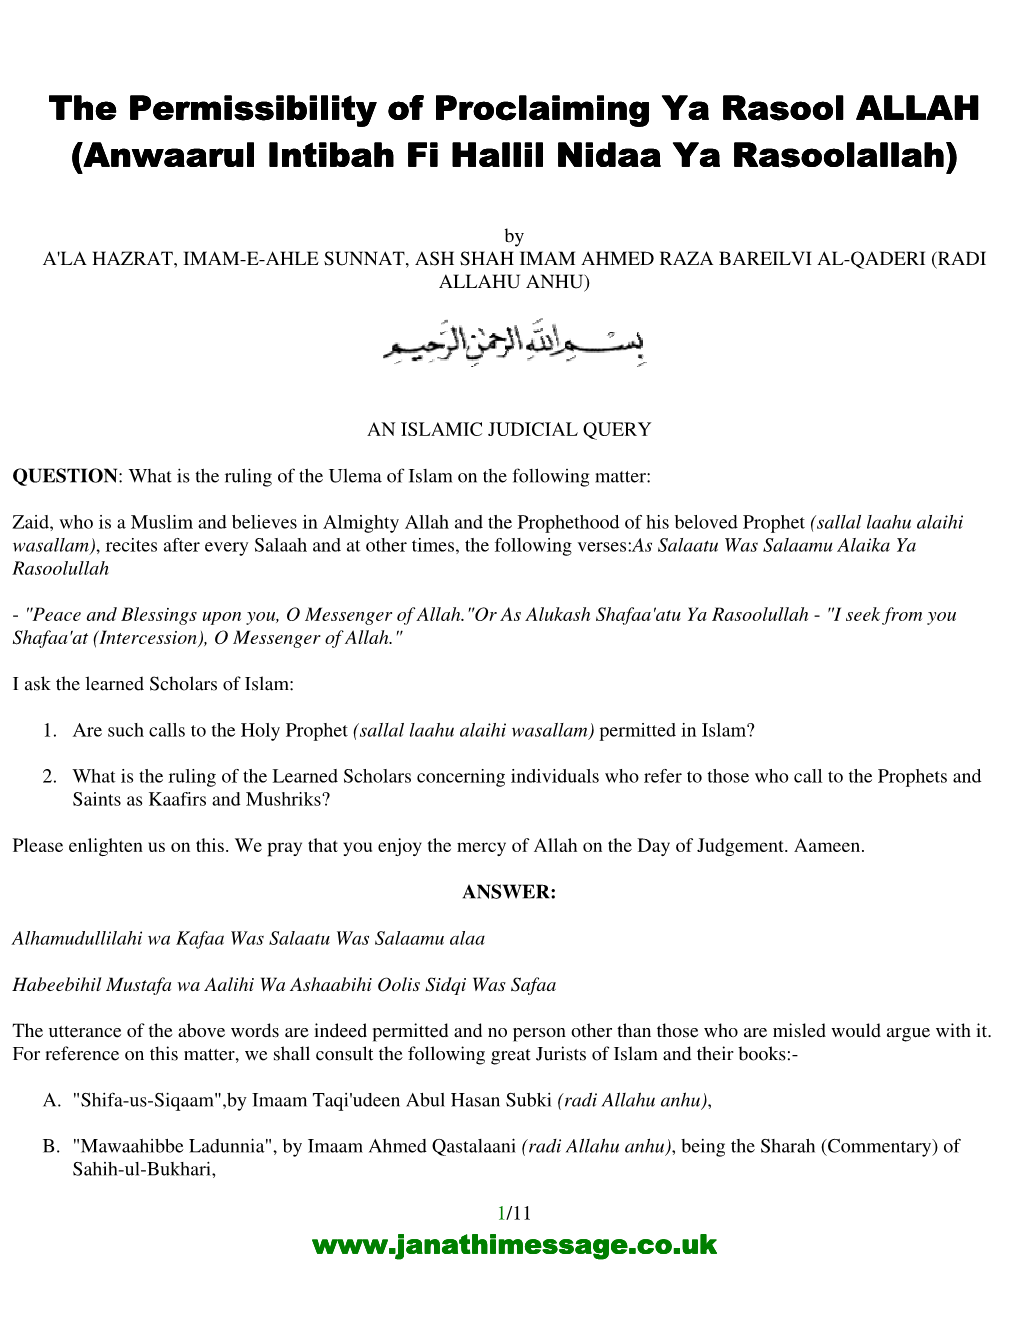 The Permissibility of Proclaiming Ya Rasool ALLAH (Anwaarul Intibah Fi Hallil Nidaa Ya Rasoolallah)